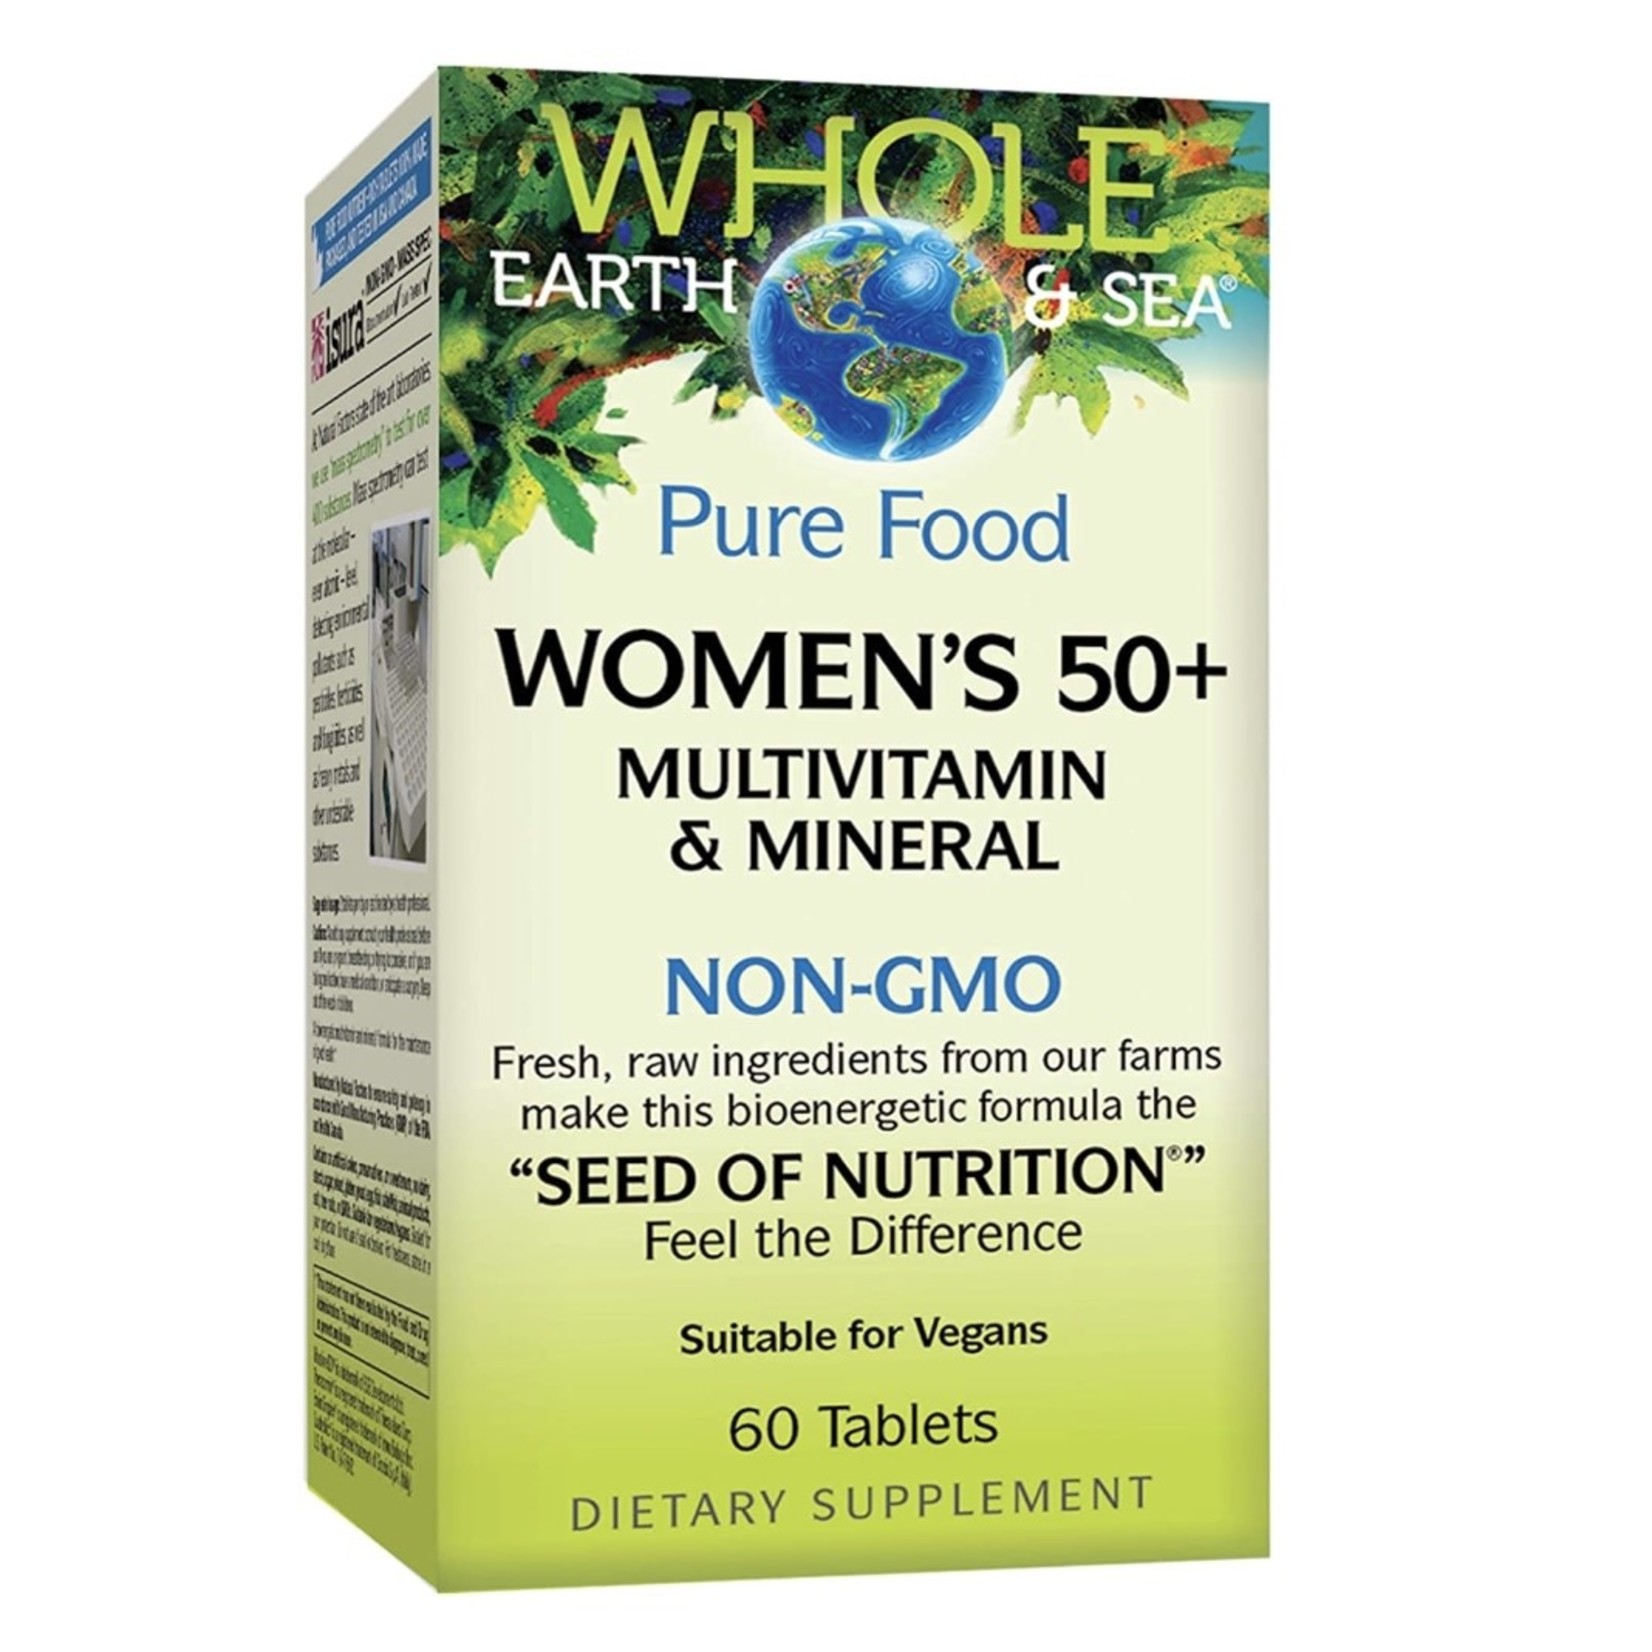 Whole Earth & Sea Whole Earth & Sea Women’s 50+ Multivitamin 60 tabs